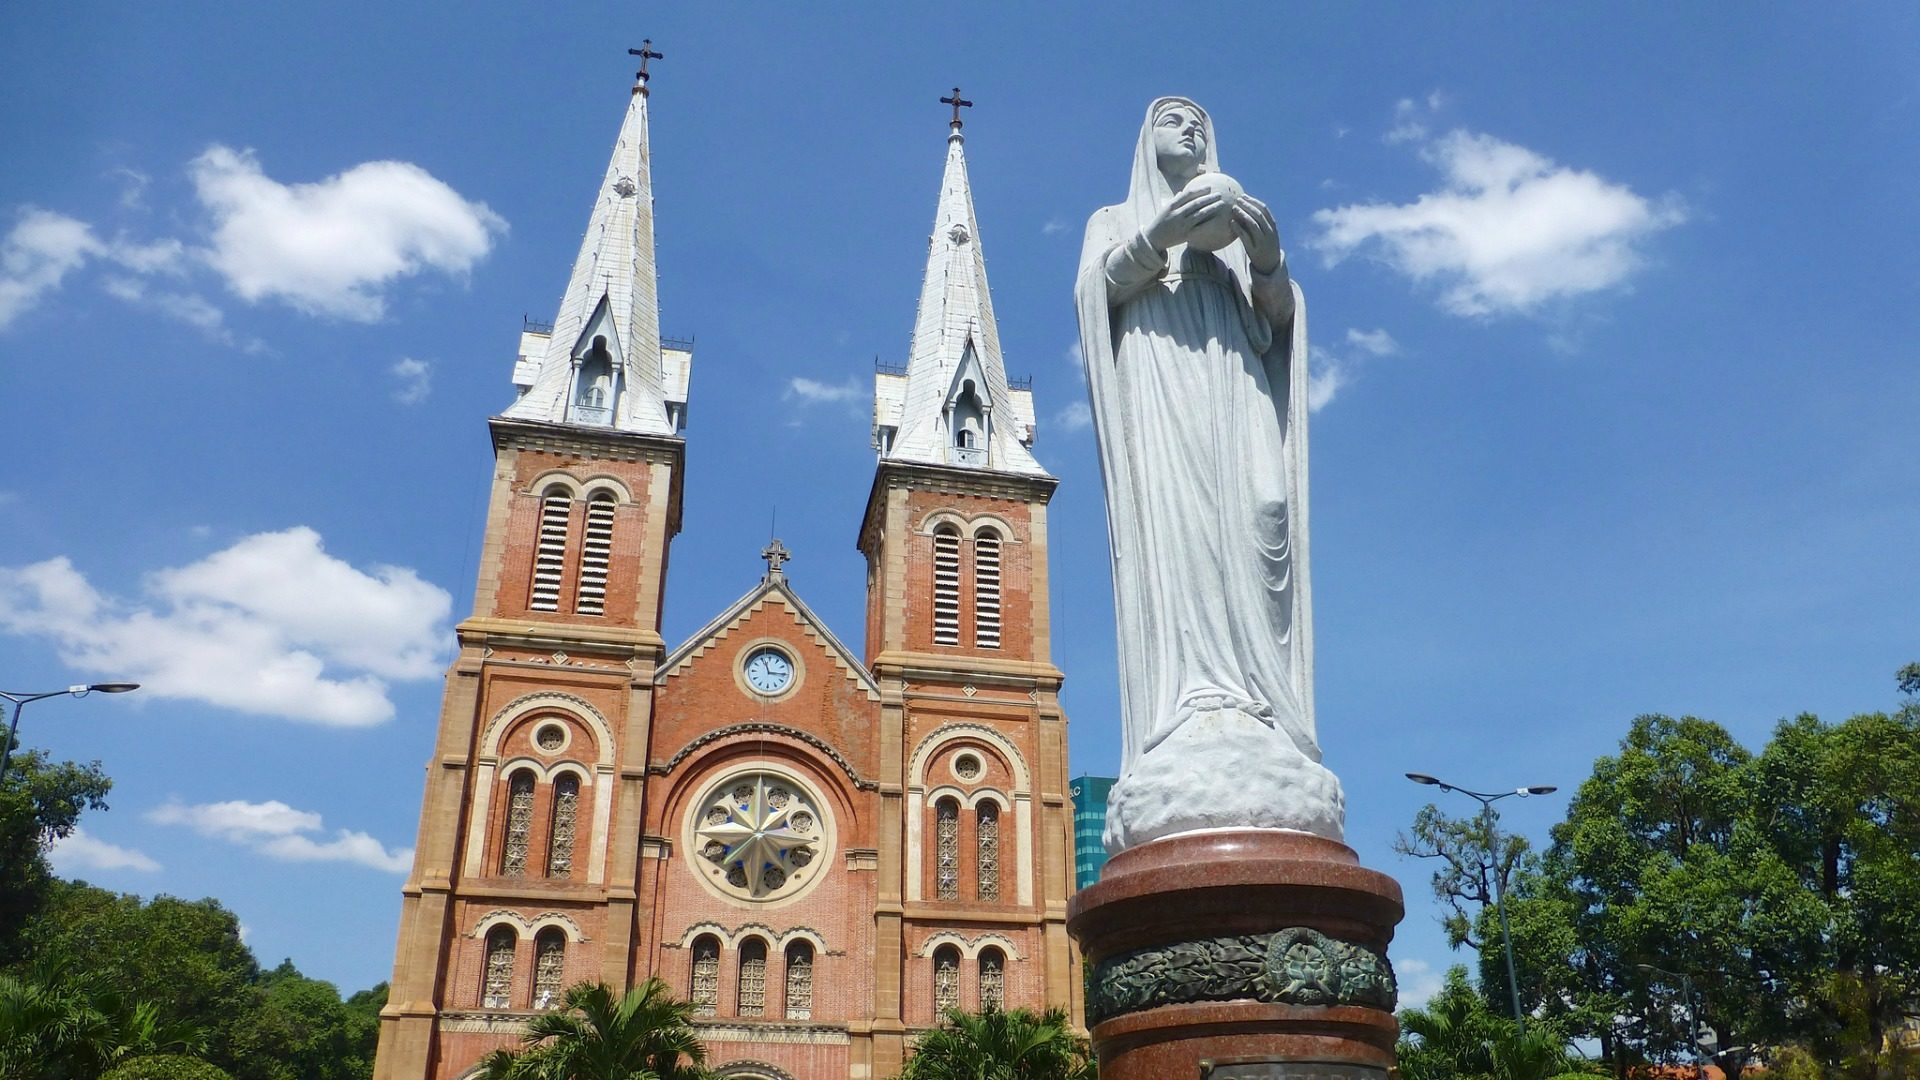 L'évêché de Bac Ninh, nord du Vietnam, juge le projet de loi sur la religion archaïque". Ici une église à Ho Chi Min ville. (Photo: Flickr/rytc/CC BY-NC-ND 2.0)